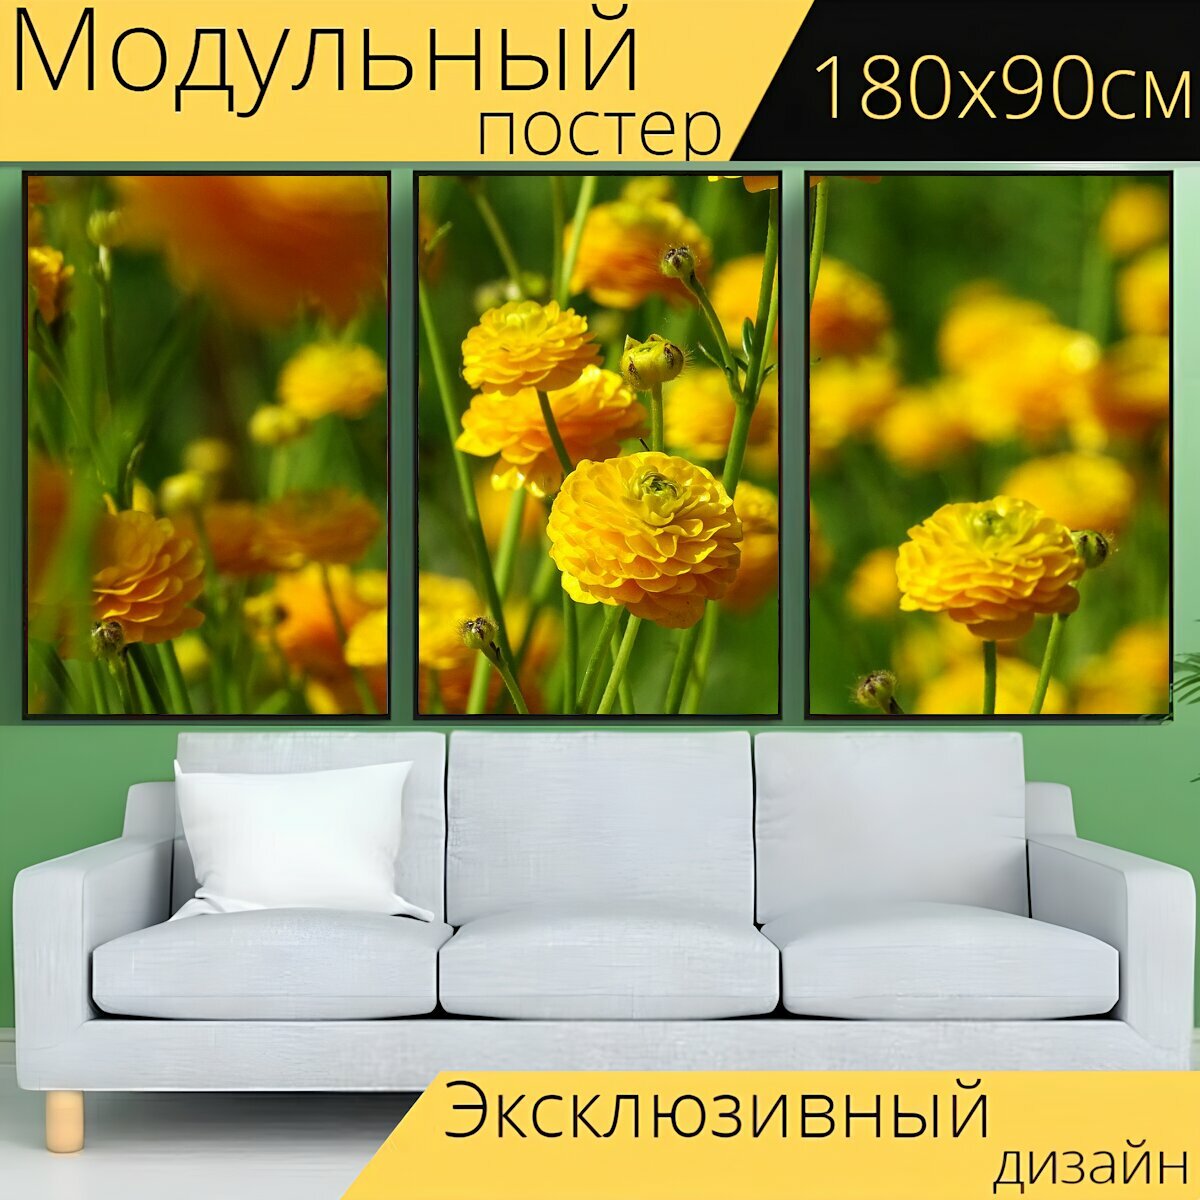 Модульный постер "Цветок, завод, желтый" 180 x 90 см. для интерьера